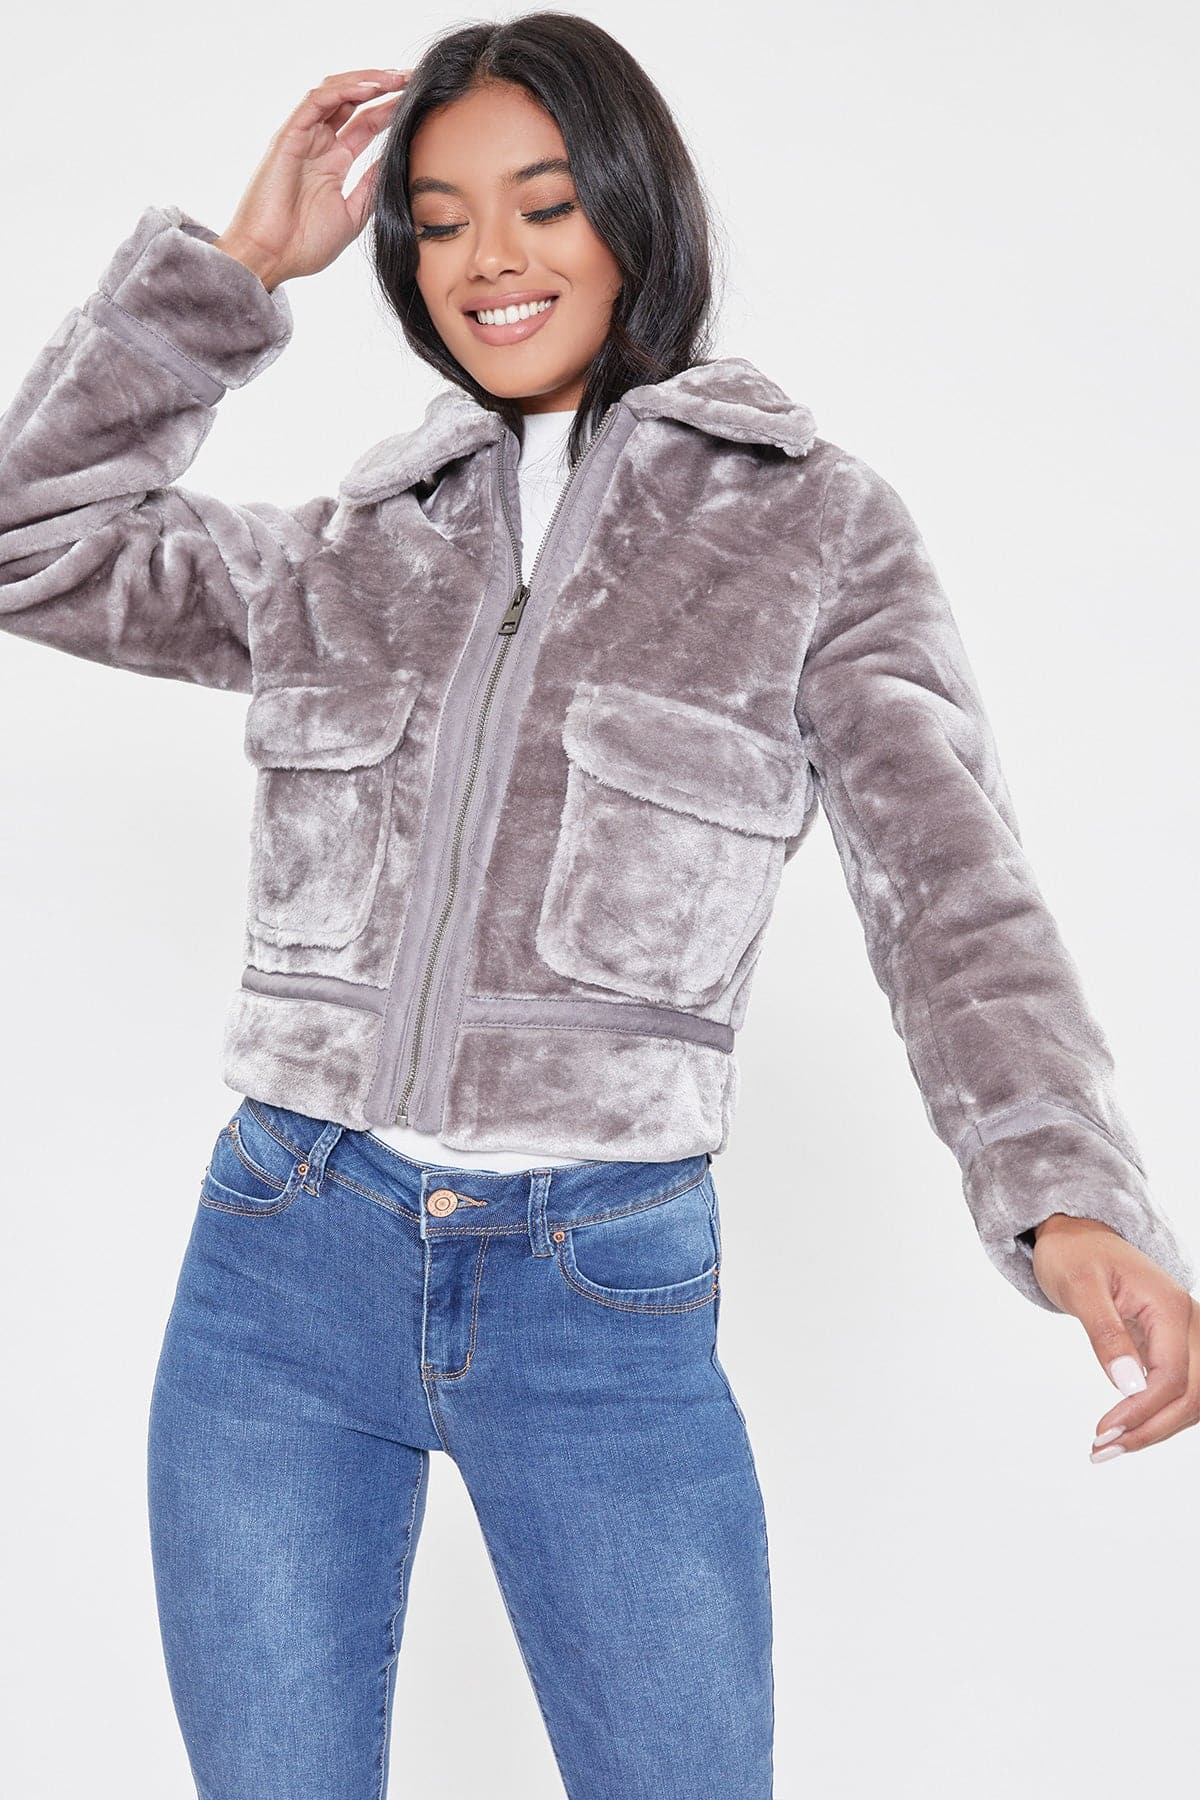 Women's Winter Faux Fur Jacket from YMI – YMI JEANS